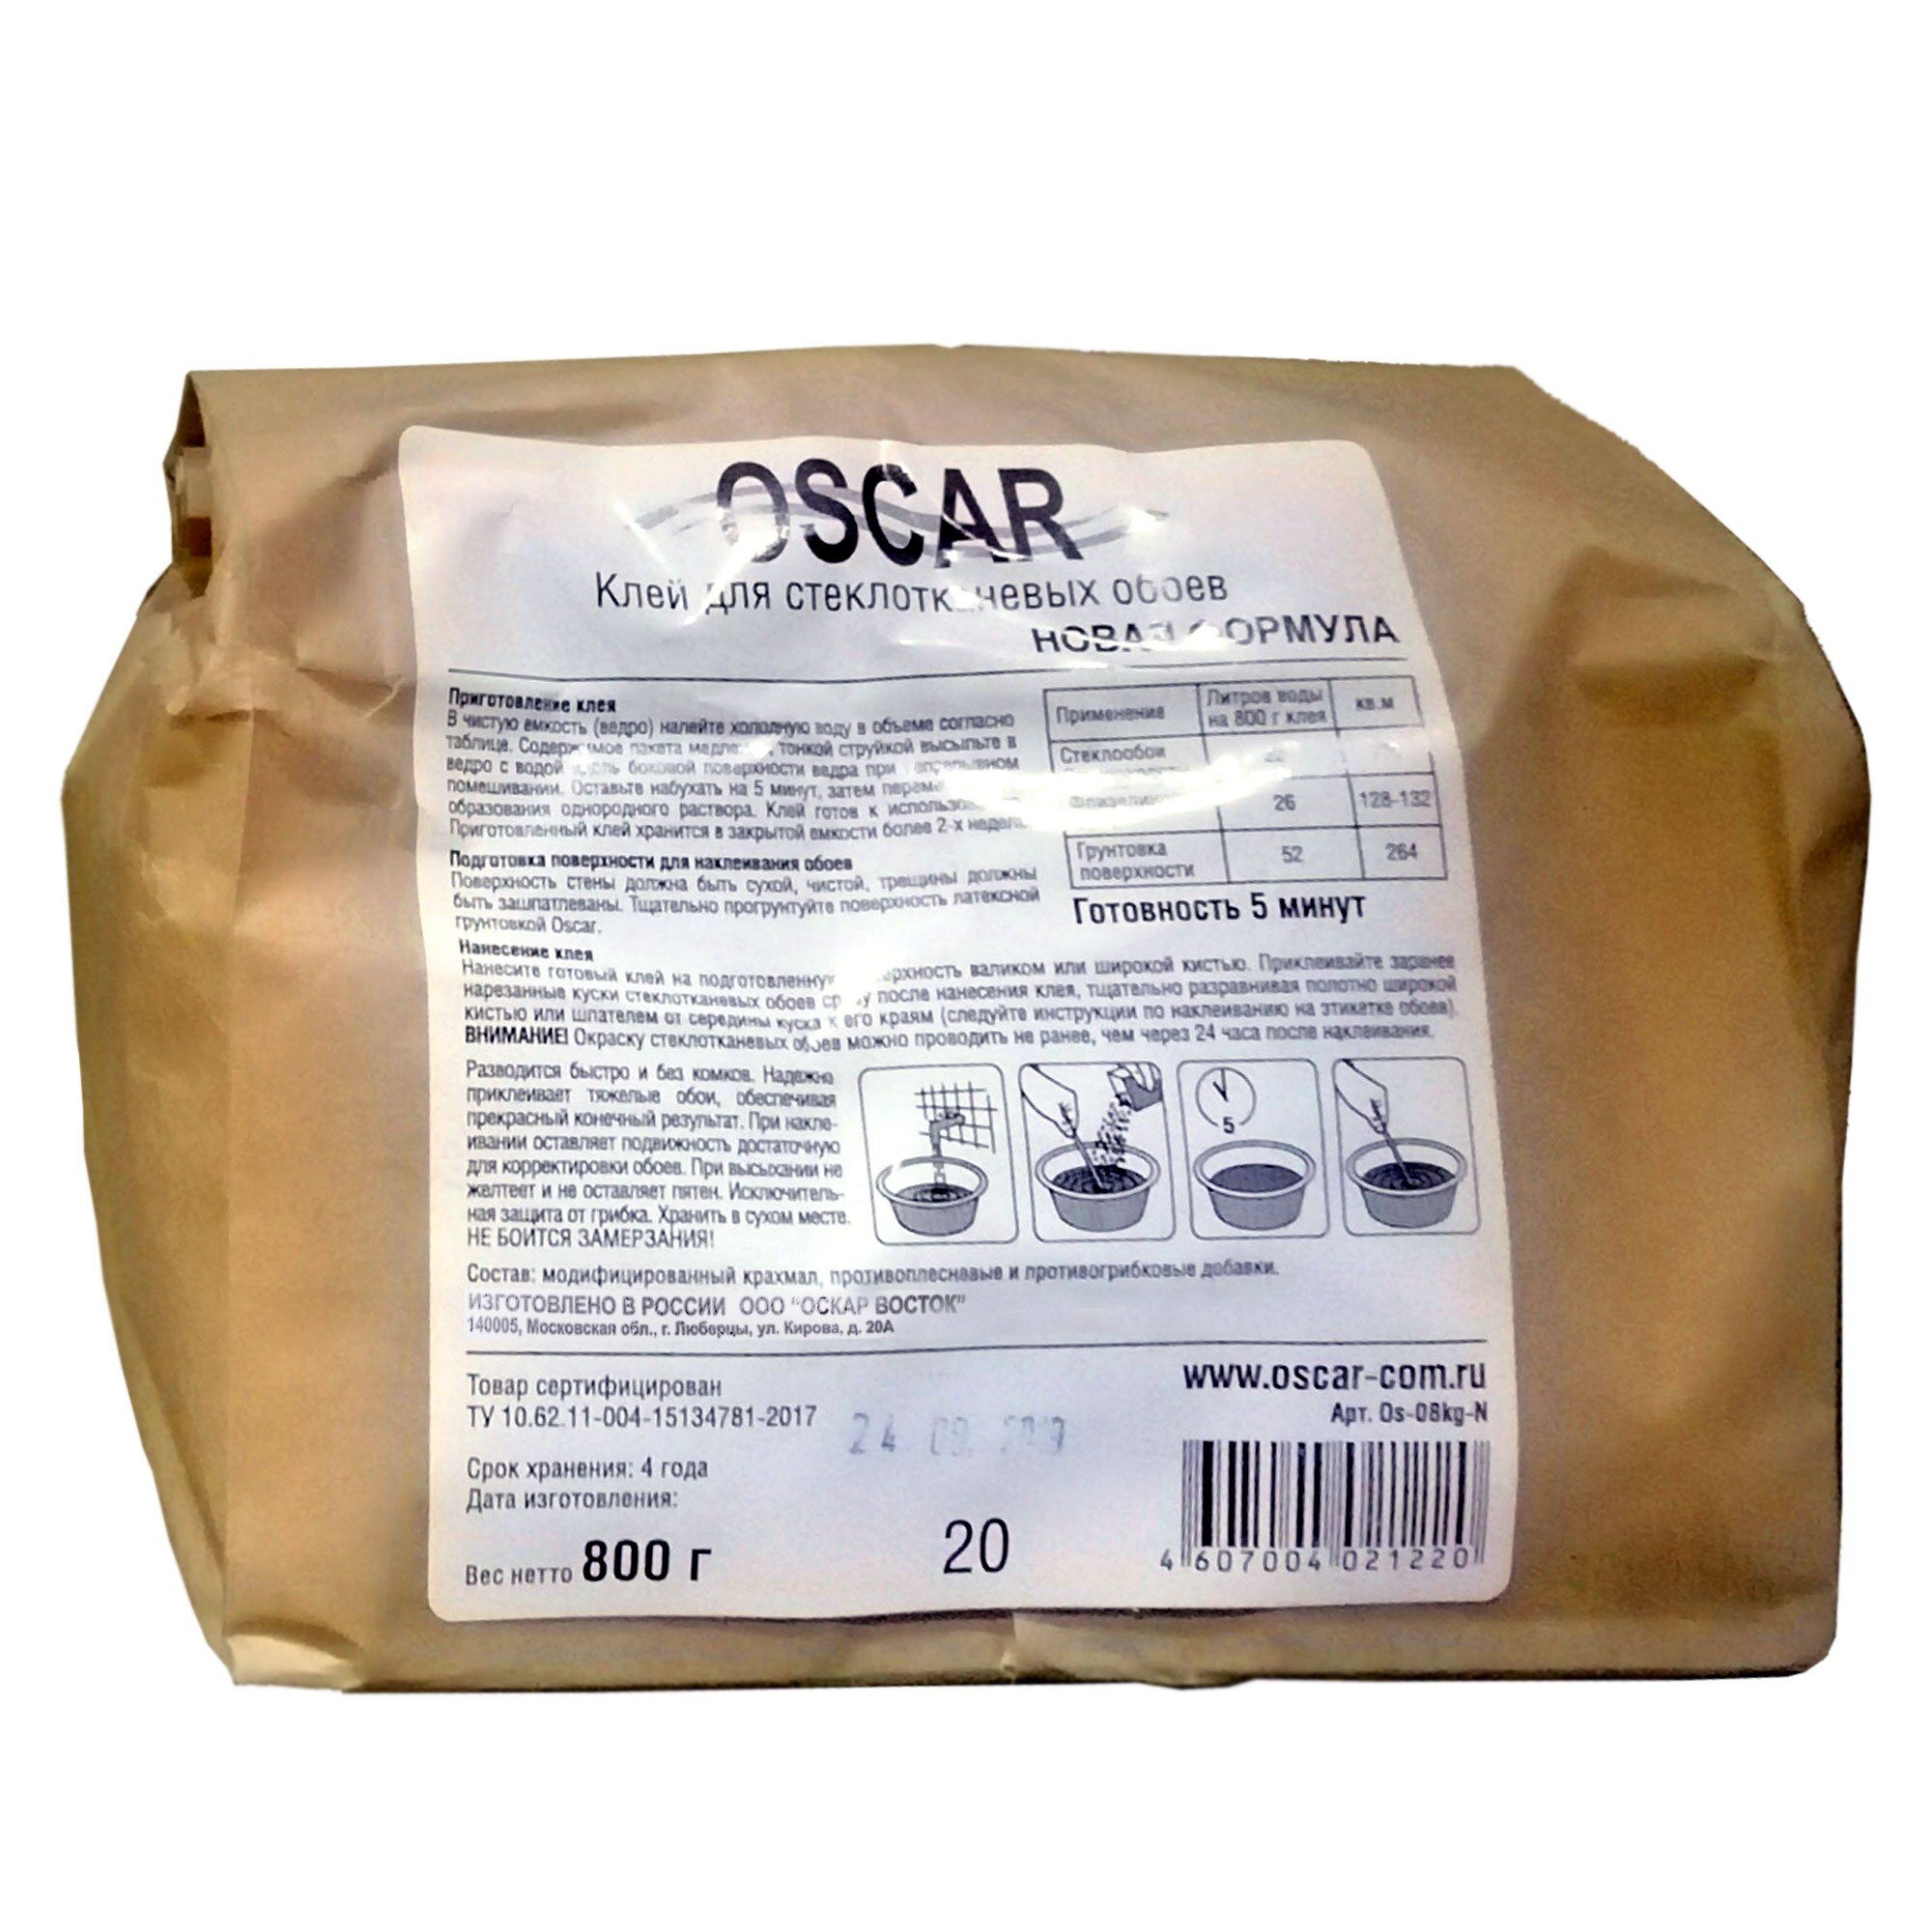 Сухой клей "Oscar" 0,8 кг. (мешок) ООО "ОСКАР-ВОСТОК" (Россия)